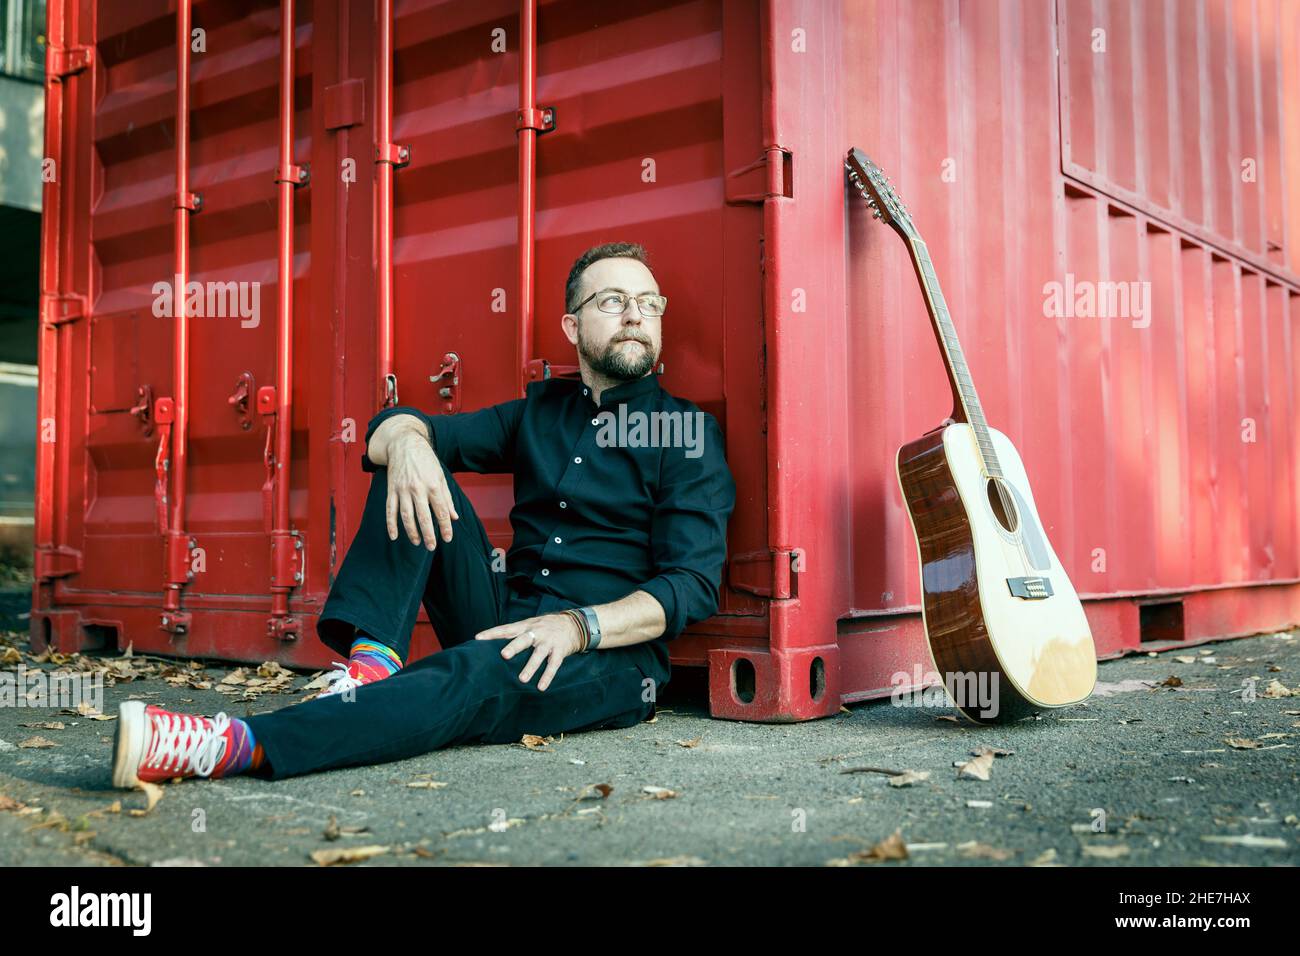 Mann in Schwarz mit einem Bart, der auf einem Boden unter einem roten Behälter mit einer akustischen 12-saitigen Gitarre sitzt Stockfoto